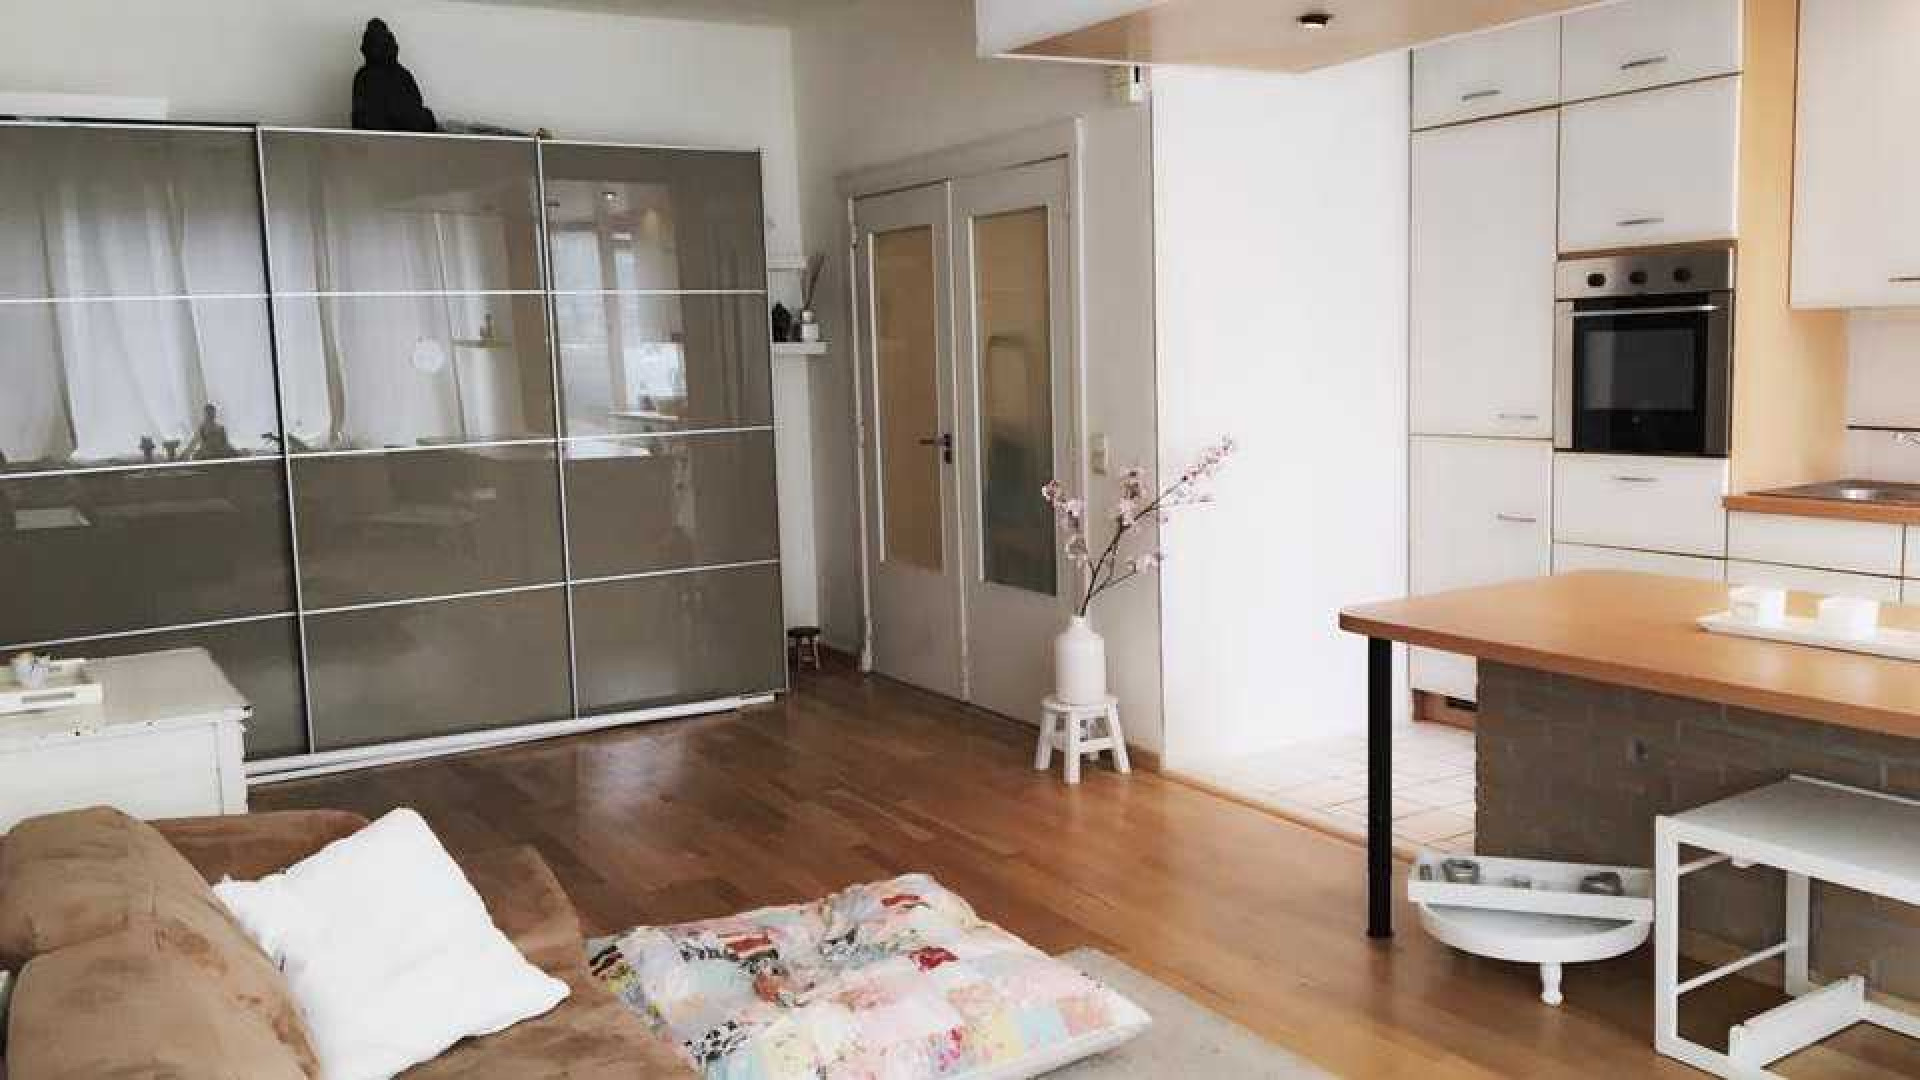 Vriendin Martijn Krabbe zet haar appartement in Belgie te koop. Zie foto's